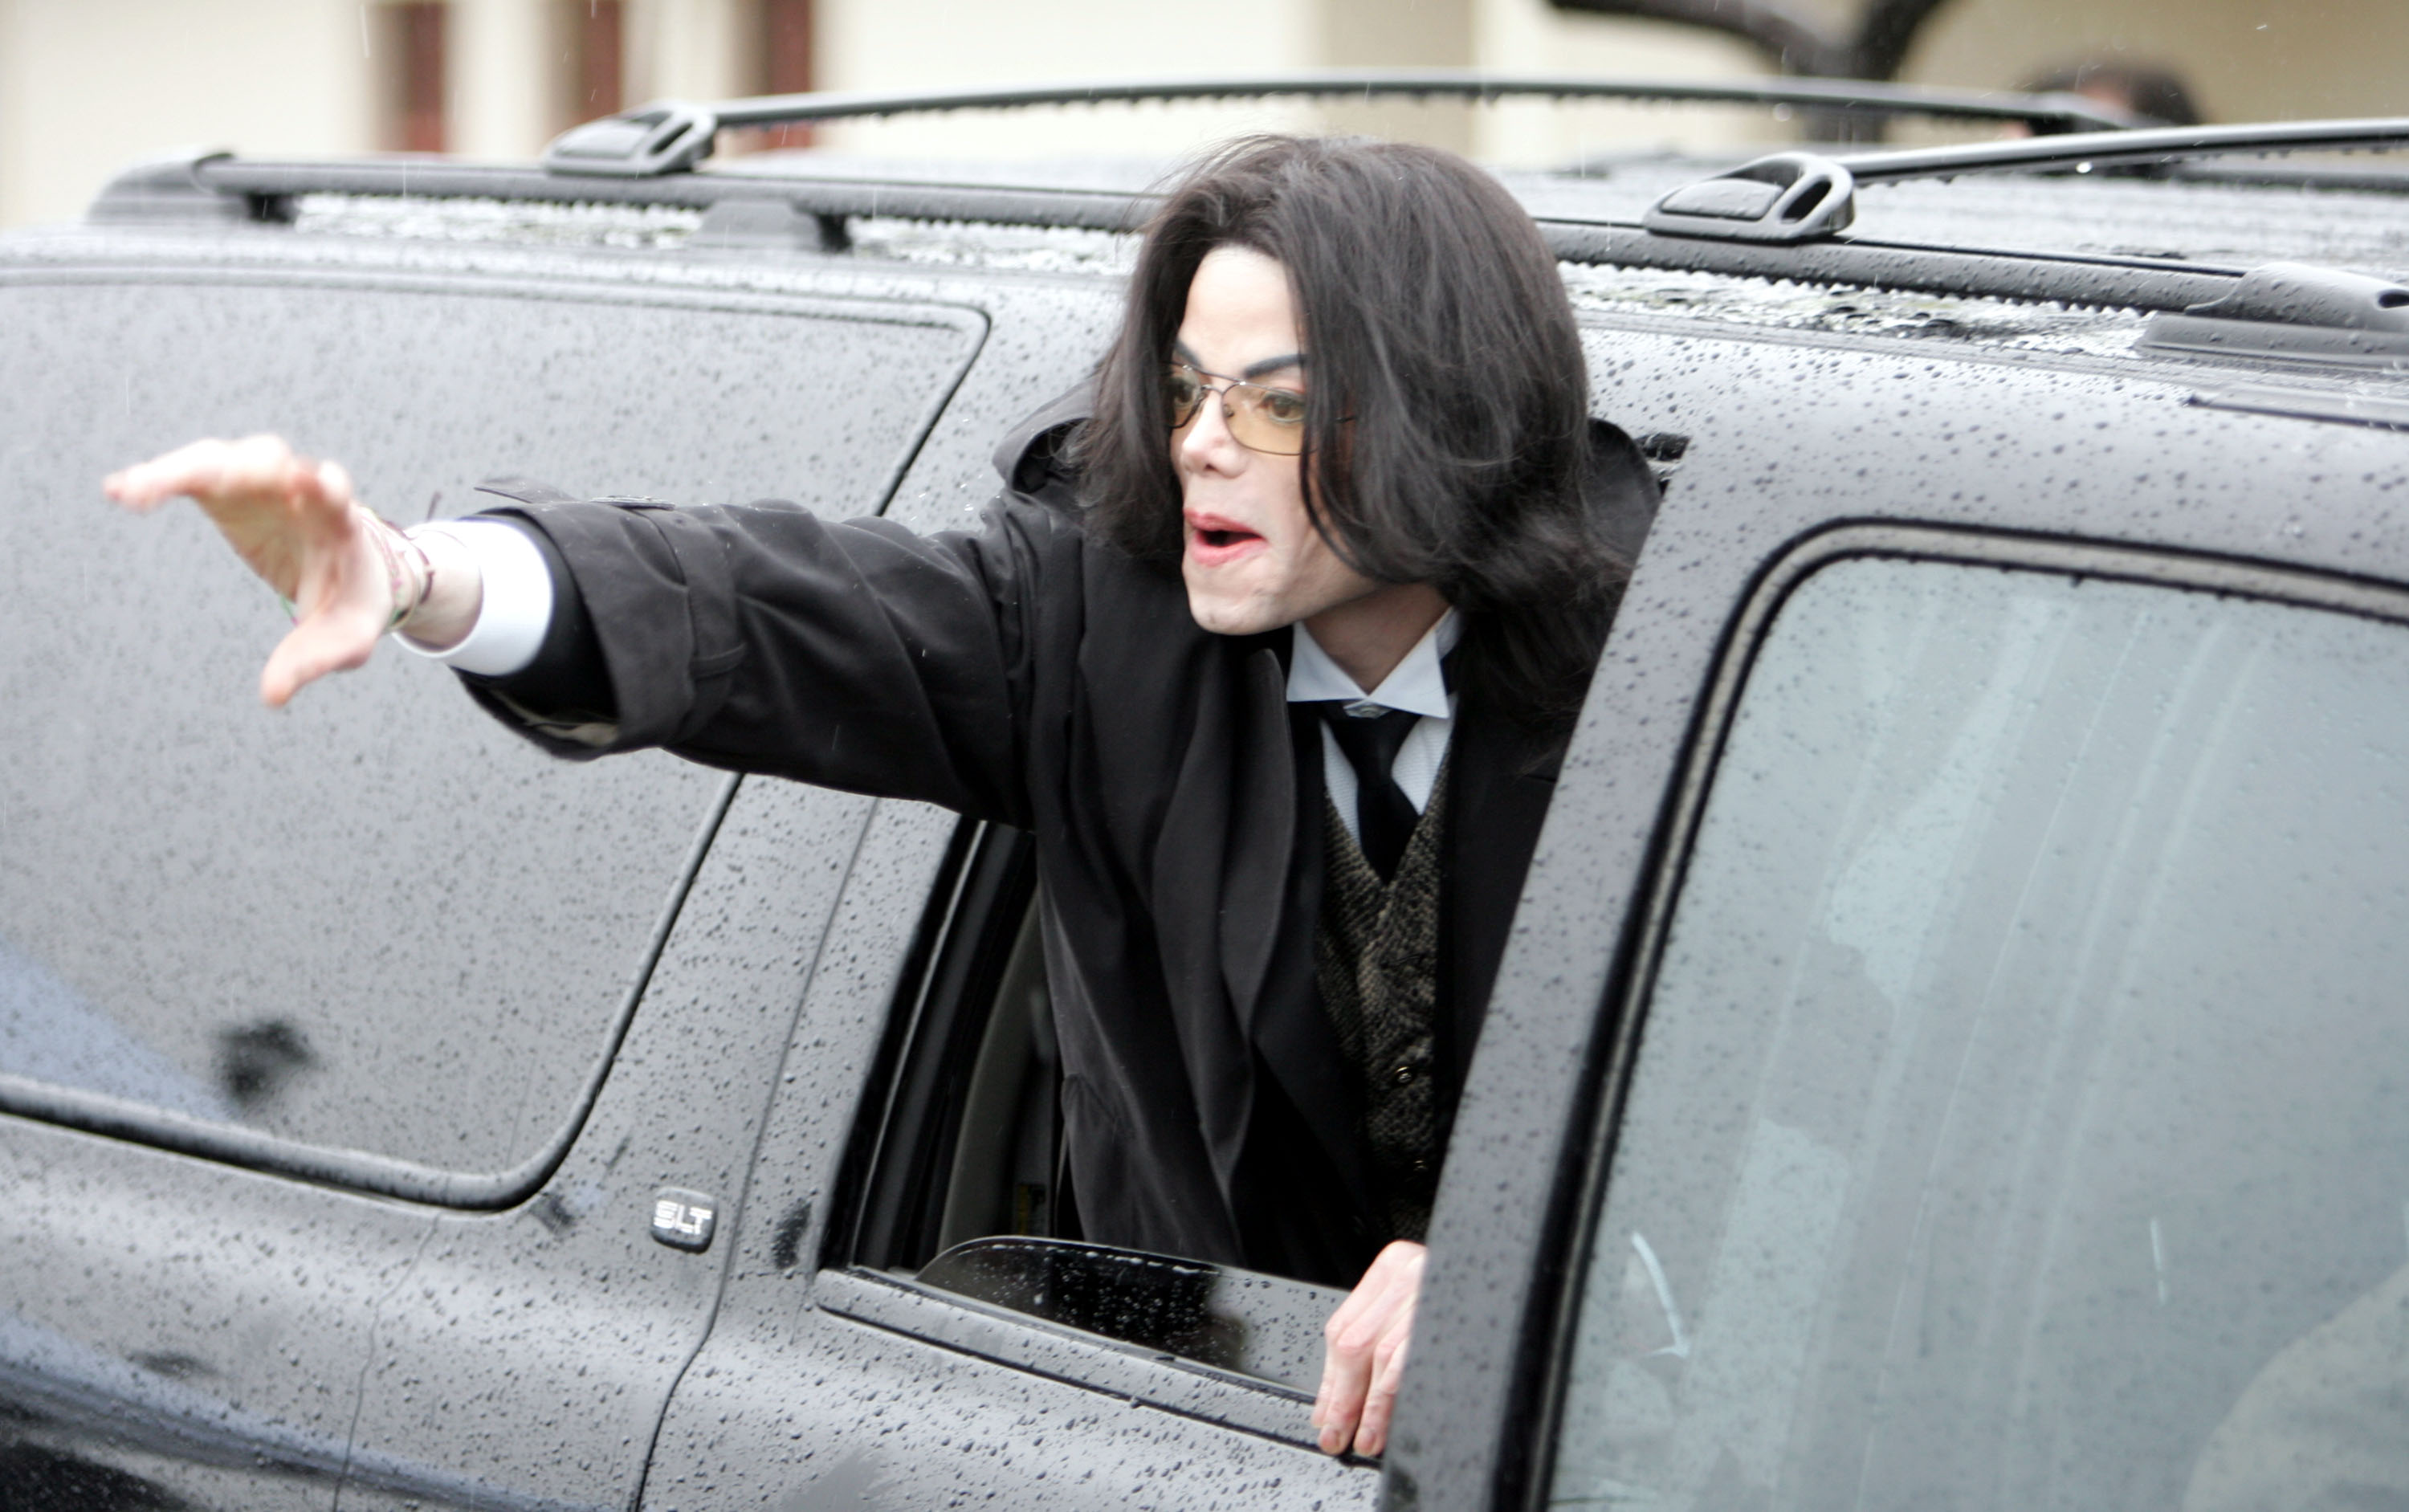 Michael Jackson au palais de justice du comté de Santa Barbara en 2005 | Source : Getty Images